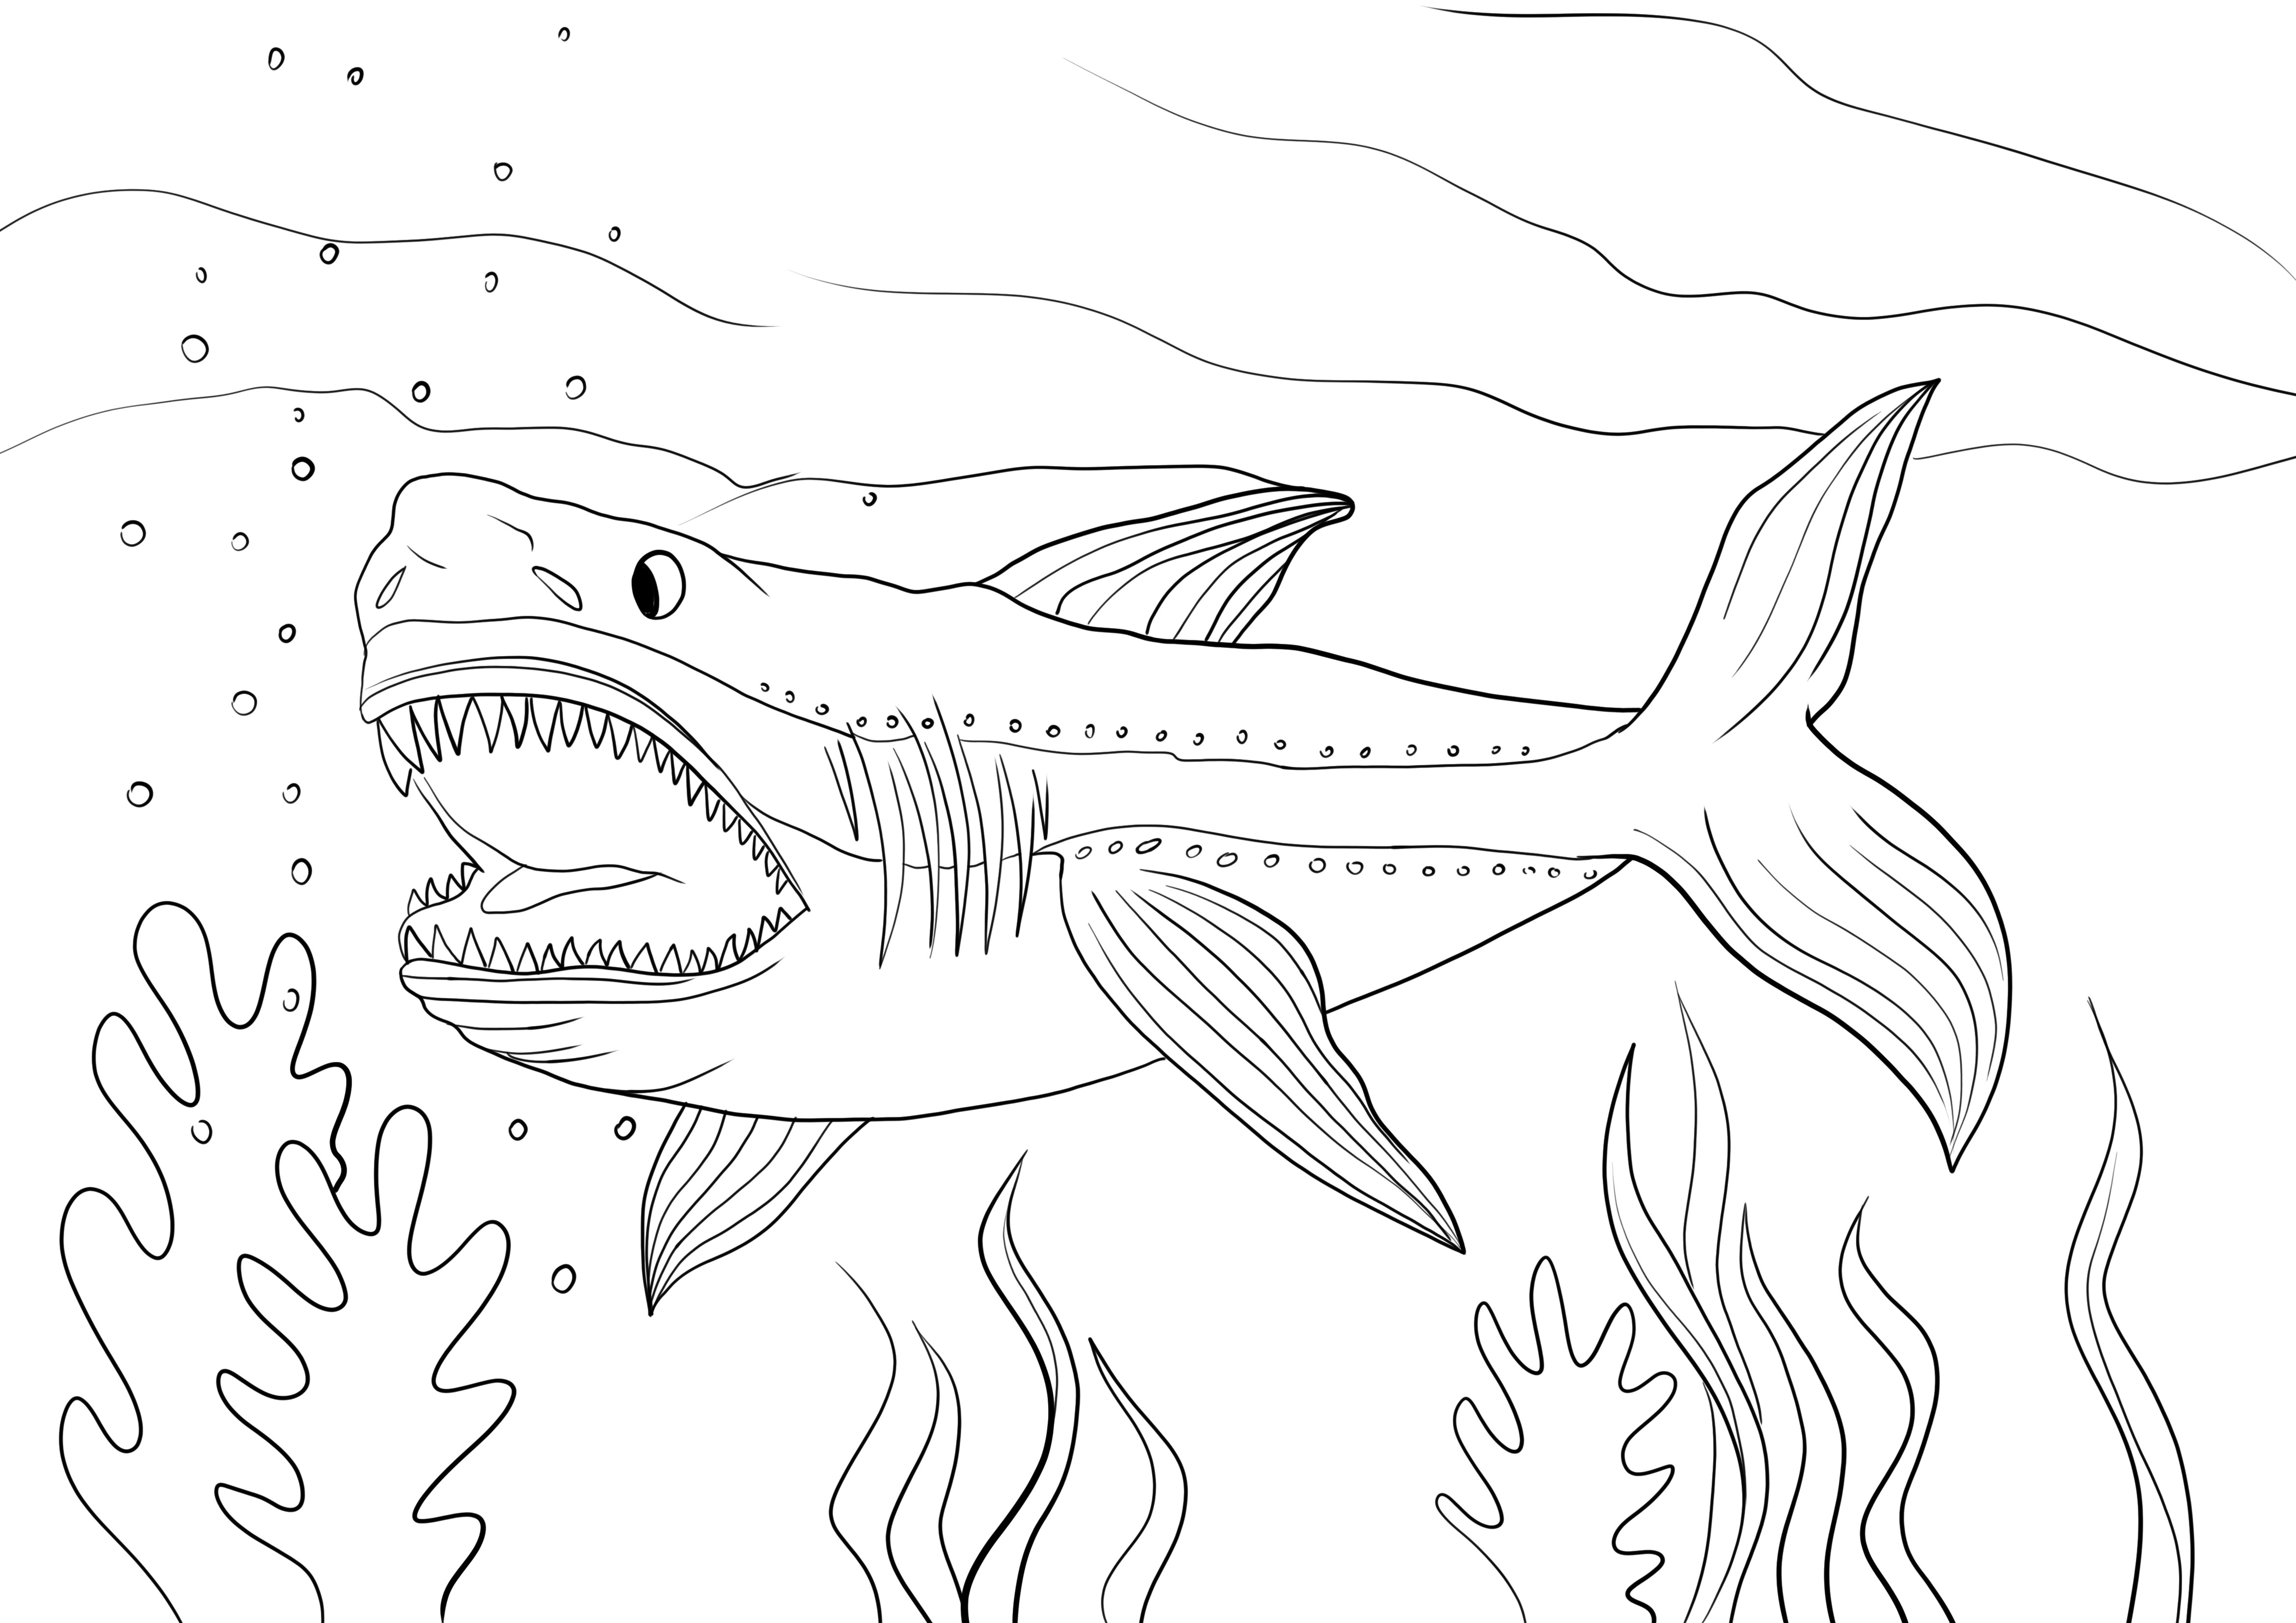 Megalodon-Hai zum kostenlosen Ausdrucken und Ausmalen oder Herunterladen